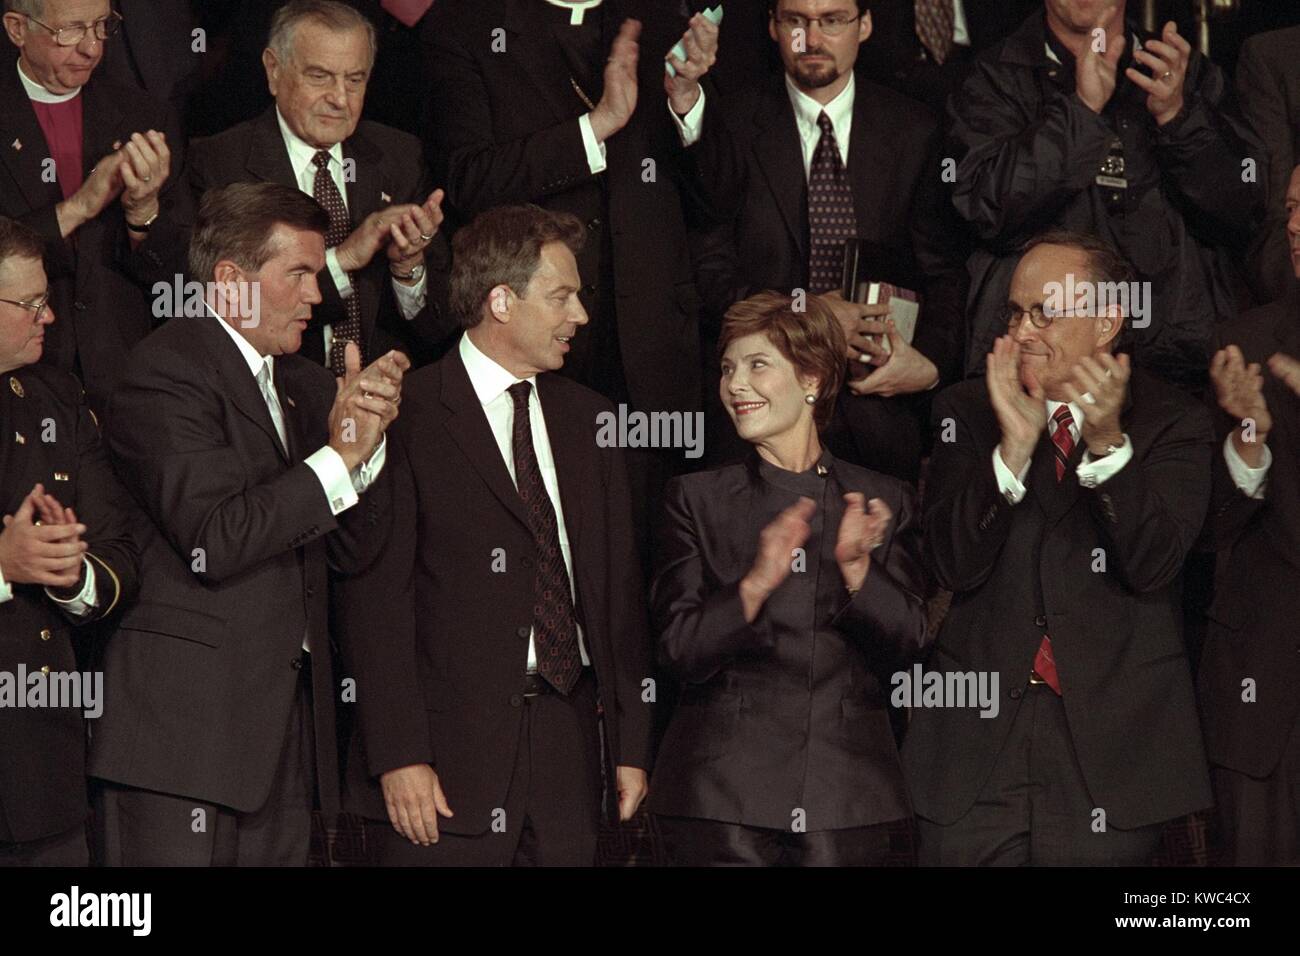 La First Lady Laura Bush con Tom Ridge, PM Tony Blair, e il sindaco di New York Rudy Giuliani. Tutti e tre gli uomini sono stati menzionati dal Presidente George W. Bush di indirizzo in cui egli ha identificato Al Qaeda ha la responsabilità e il governo dei talebani dell'Afghanistan come loro abettor. Sett. 20, 2001. (BSLOC 2015 2 165) Foto Stock